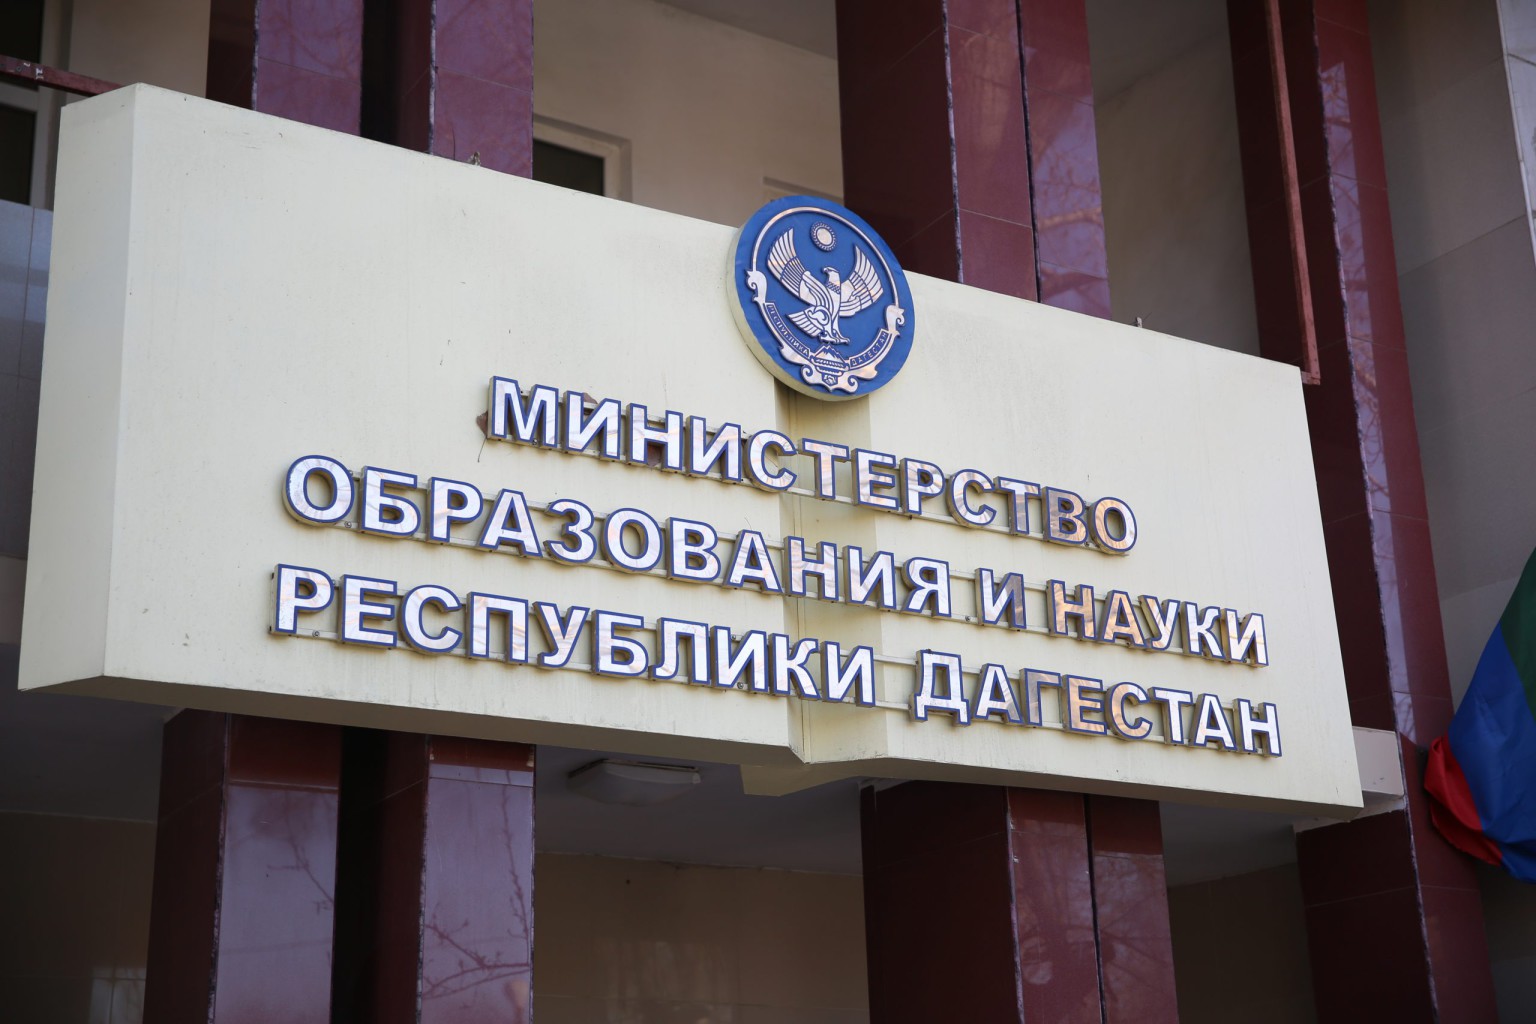 Министерство образования и науки Республики Дагестан.